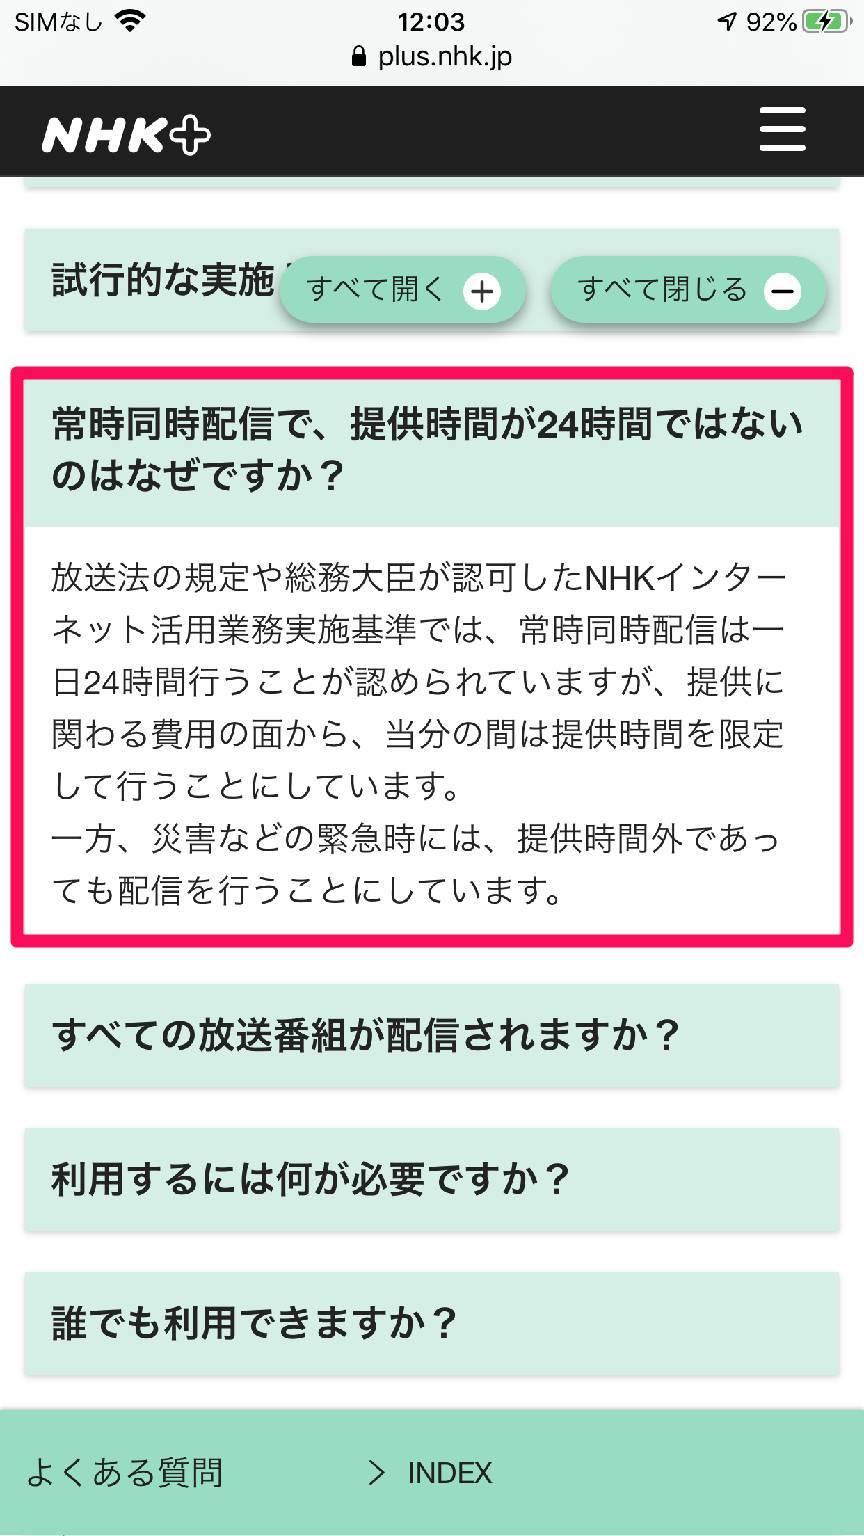 『NHKプラス』公式サイト よくある質問